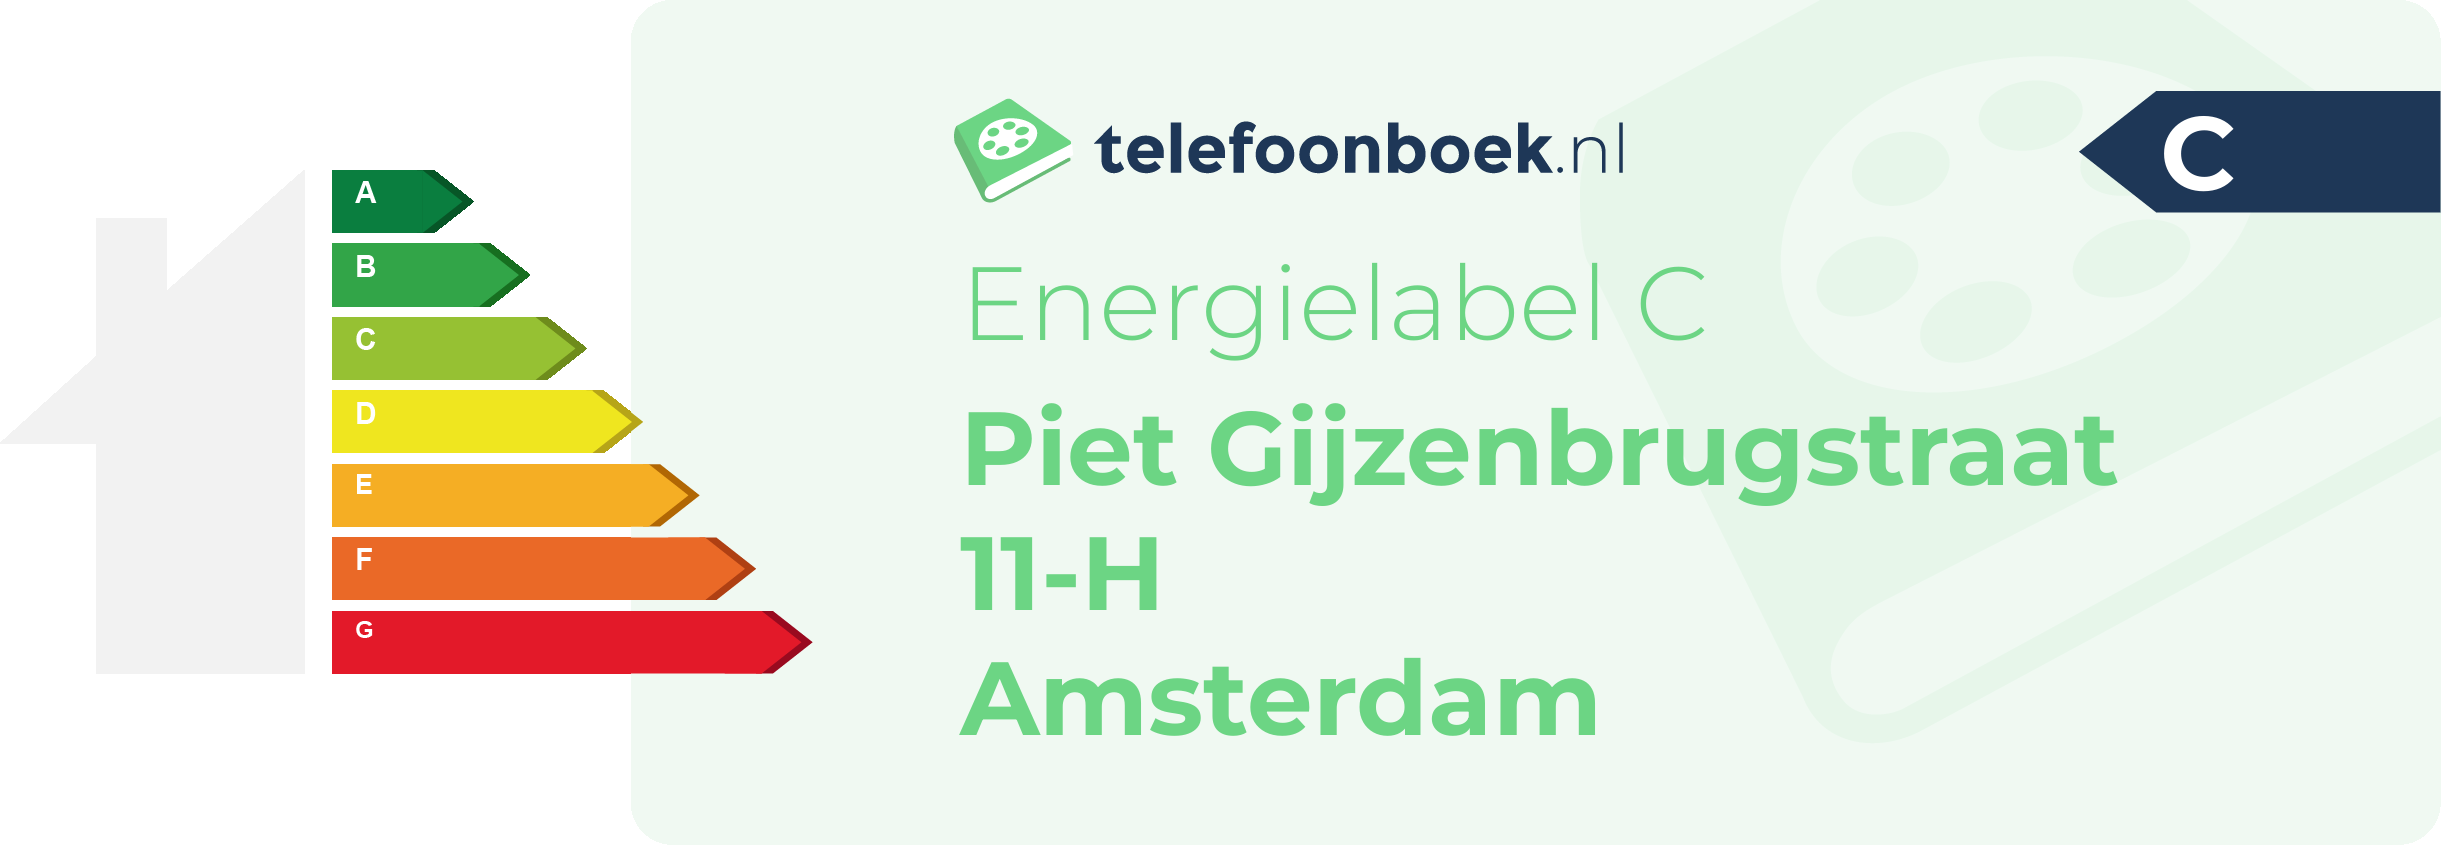 Energielabel Piet Gijzenbrugstraat 11-H Amsterdam